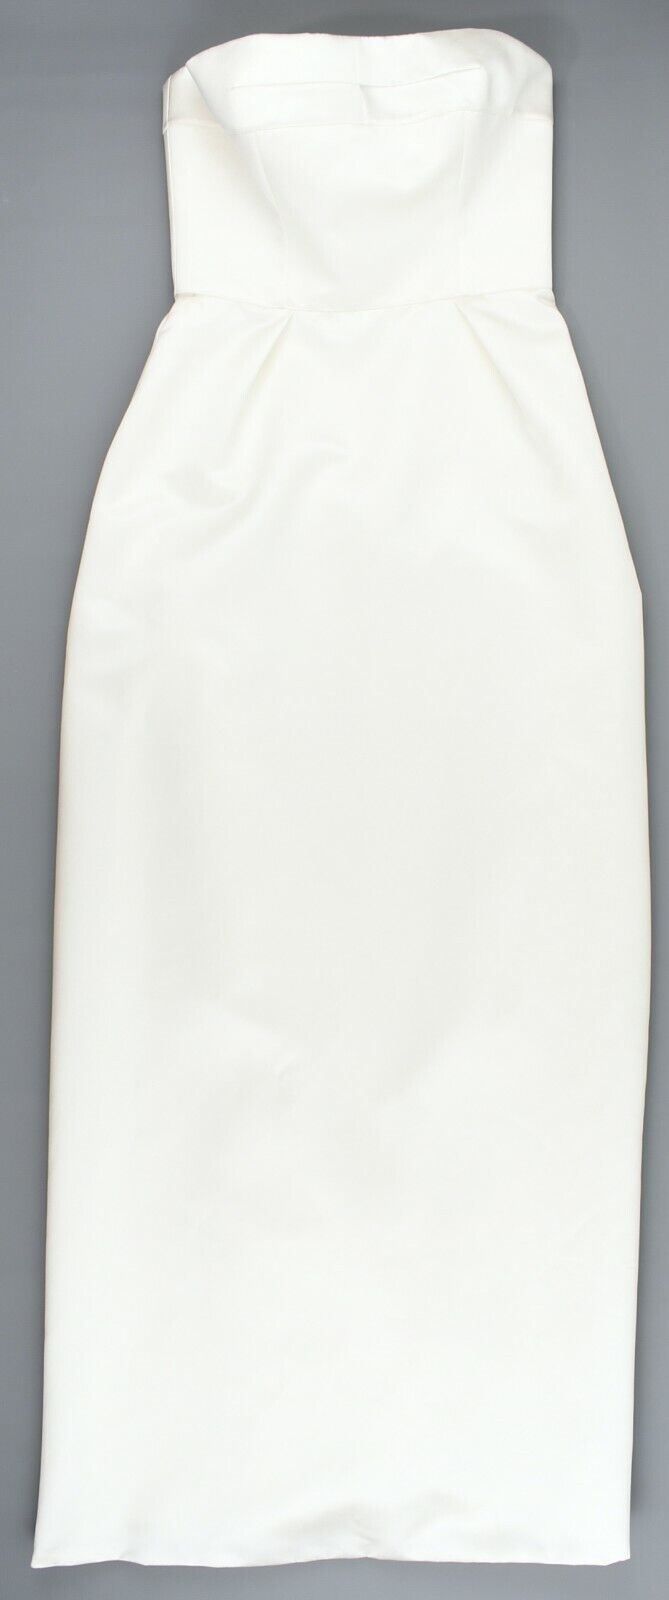 DAVID FIELDEN Women's Evening Gown, Cream Satin Long Dress, size UK 14